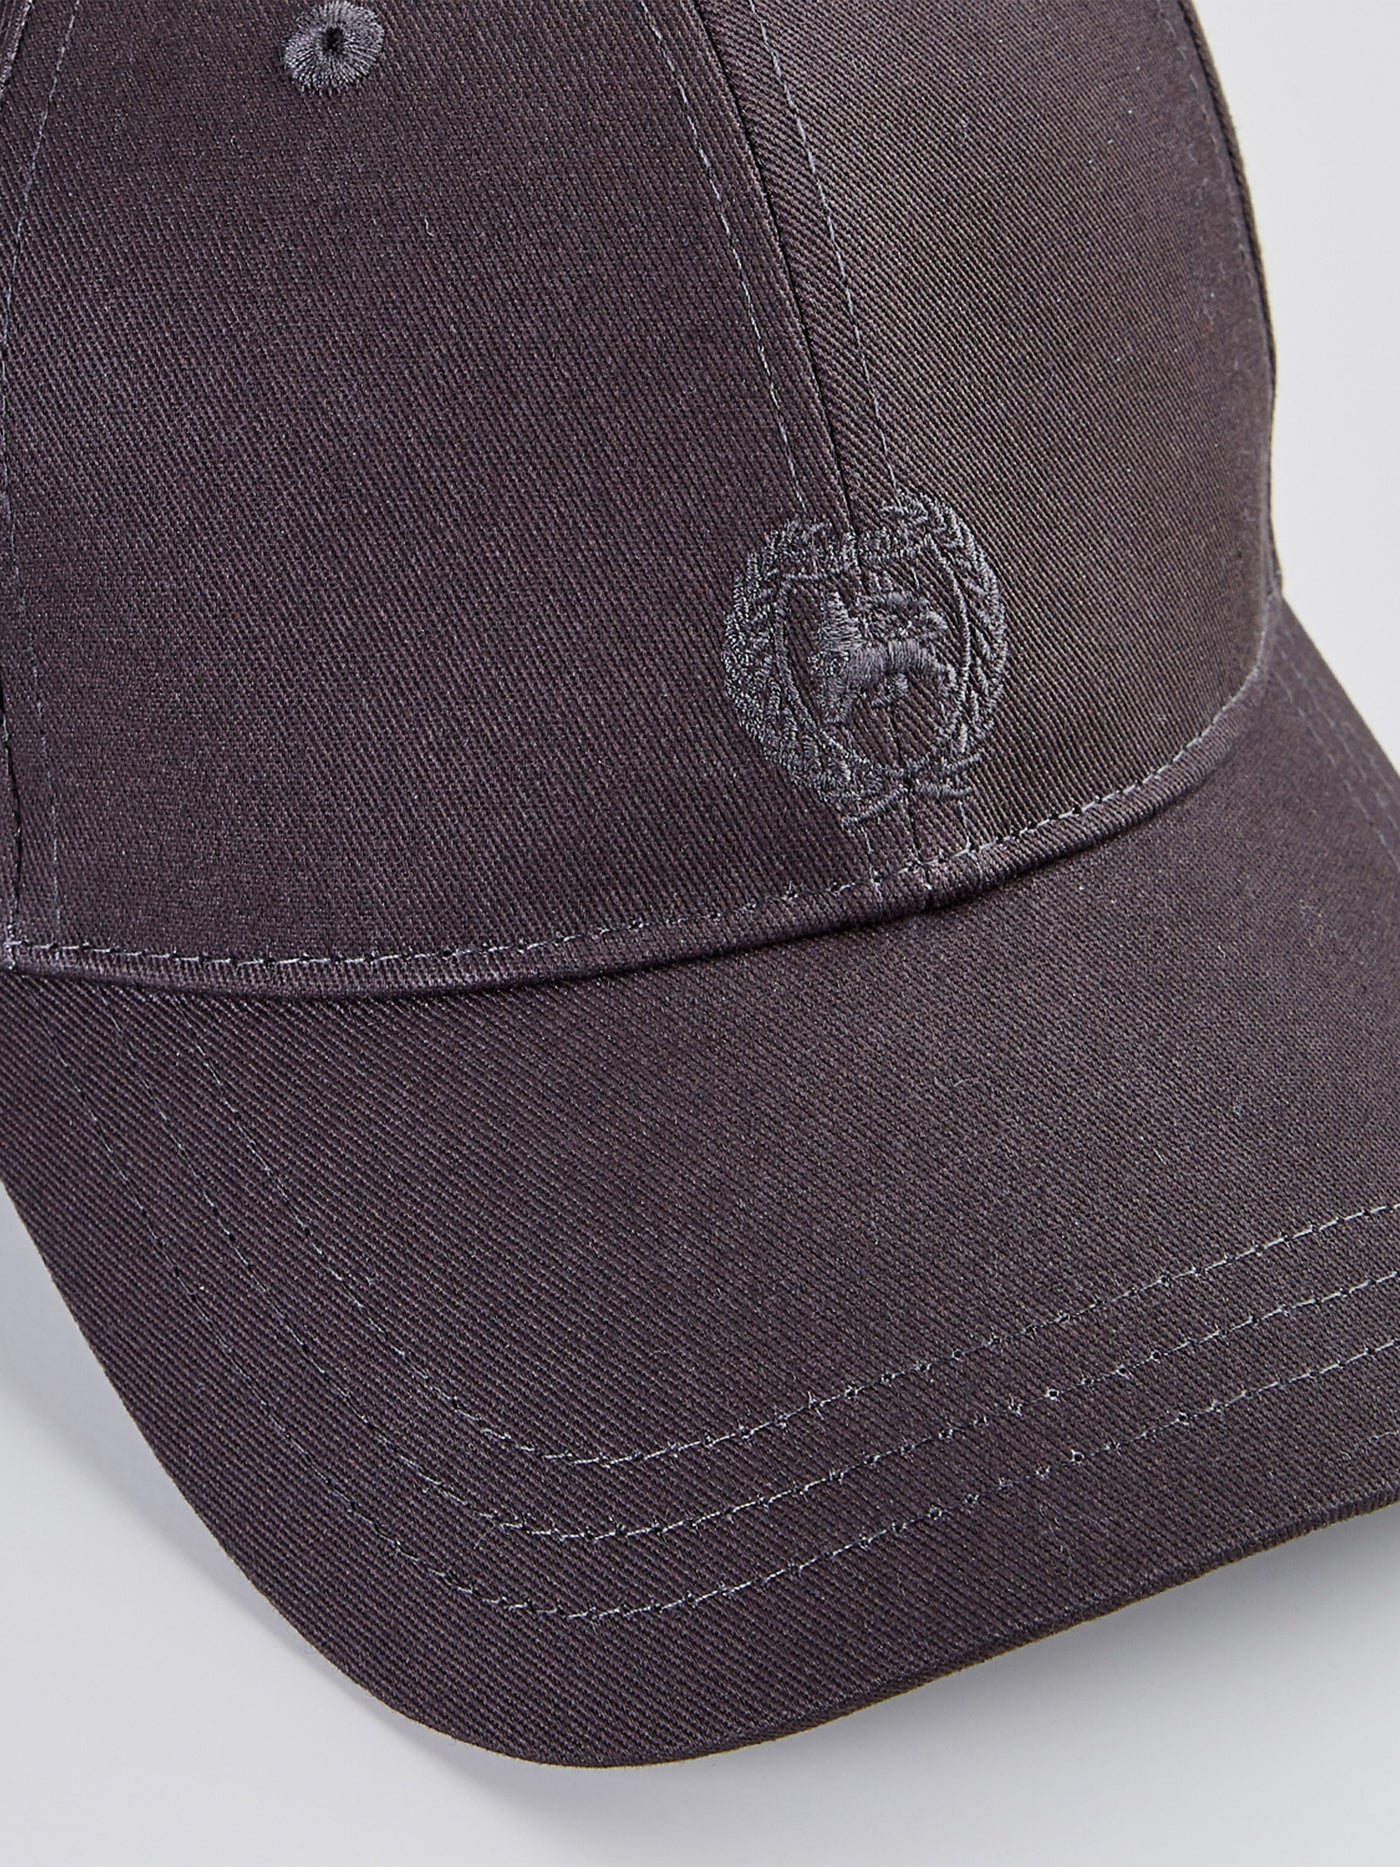 Baseball cap with SHOP – logo LERROS